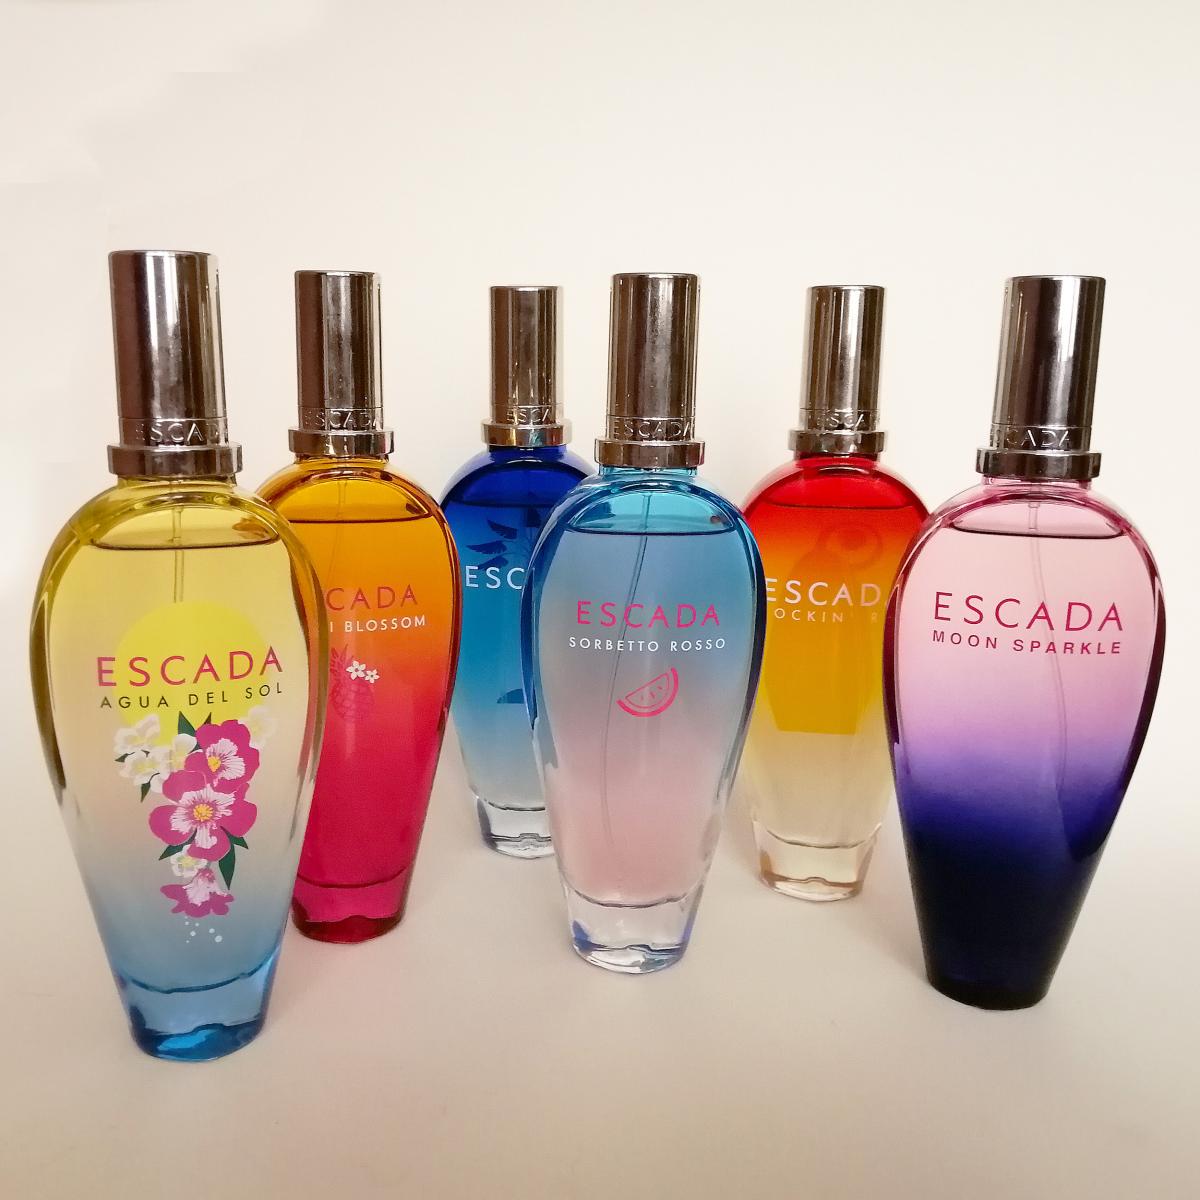 Escada Moon Sparkle Escada perfume - a fragrance for women 2007